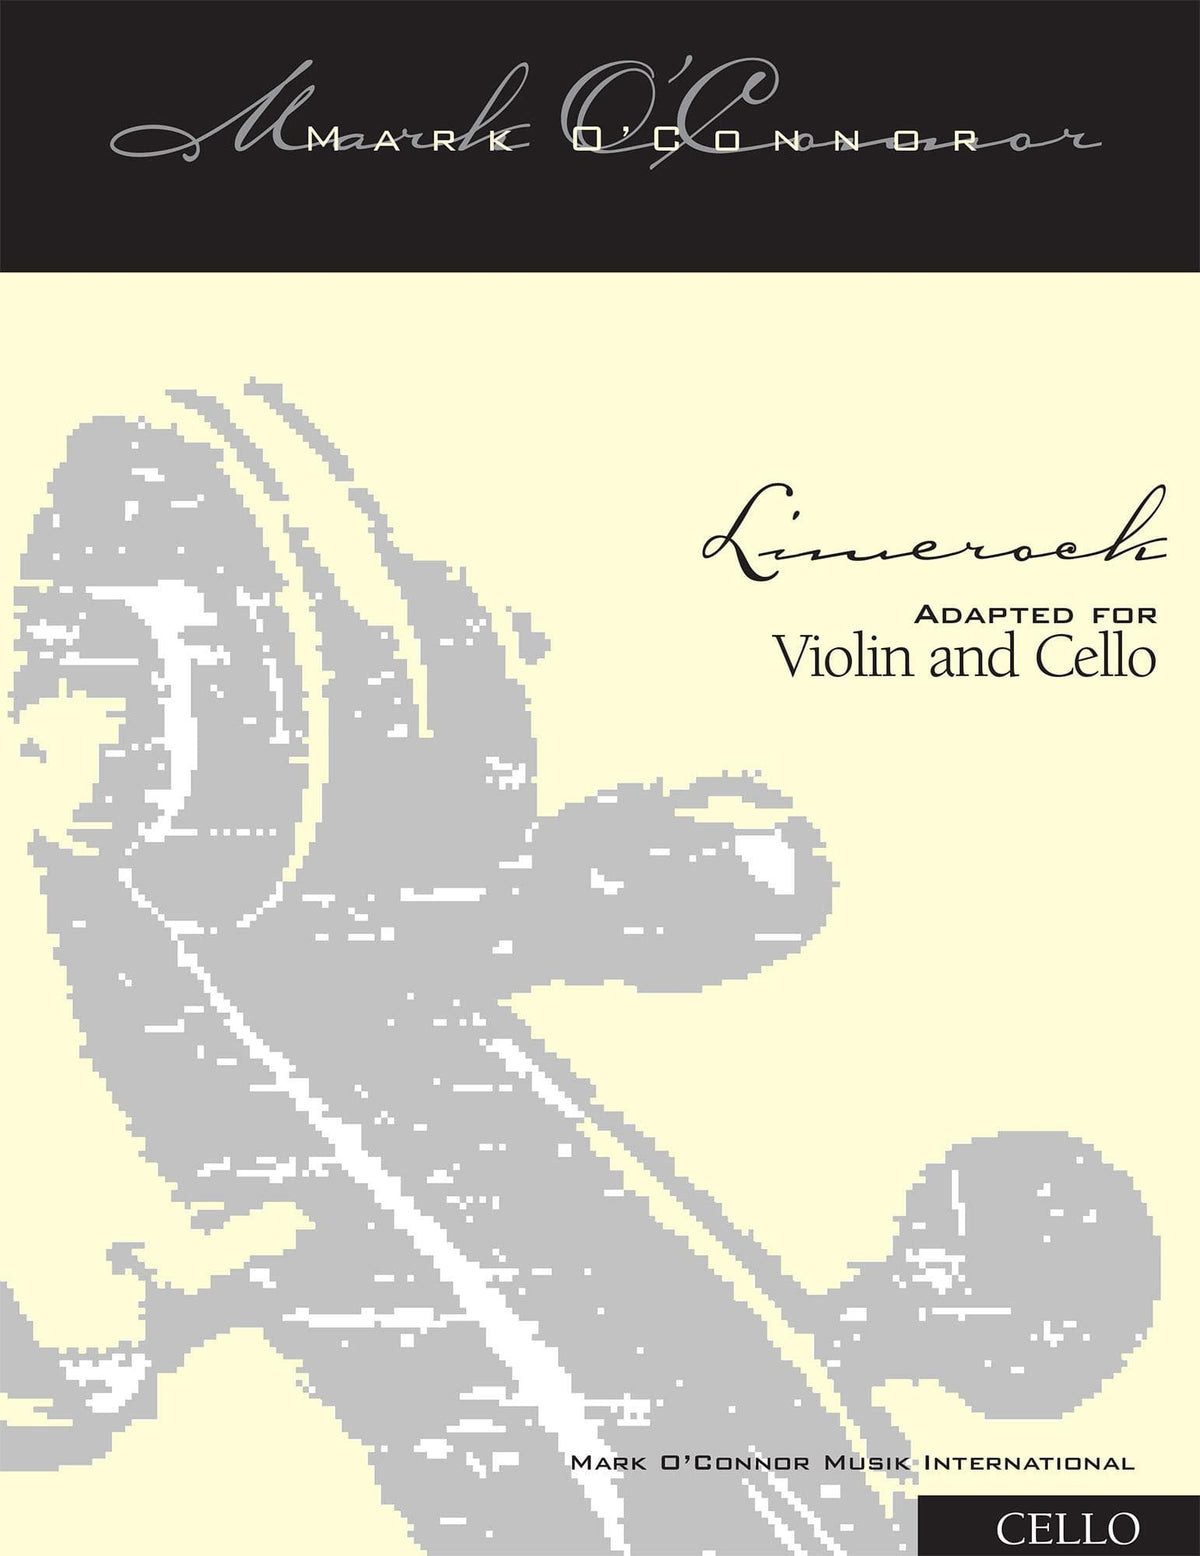 O'Connor, Mark - Limerock for Violin and Cello - Cello - Digital Download